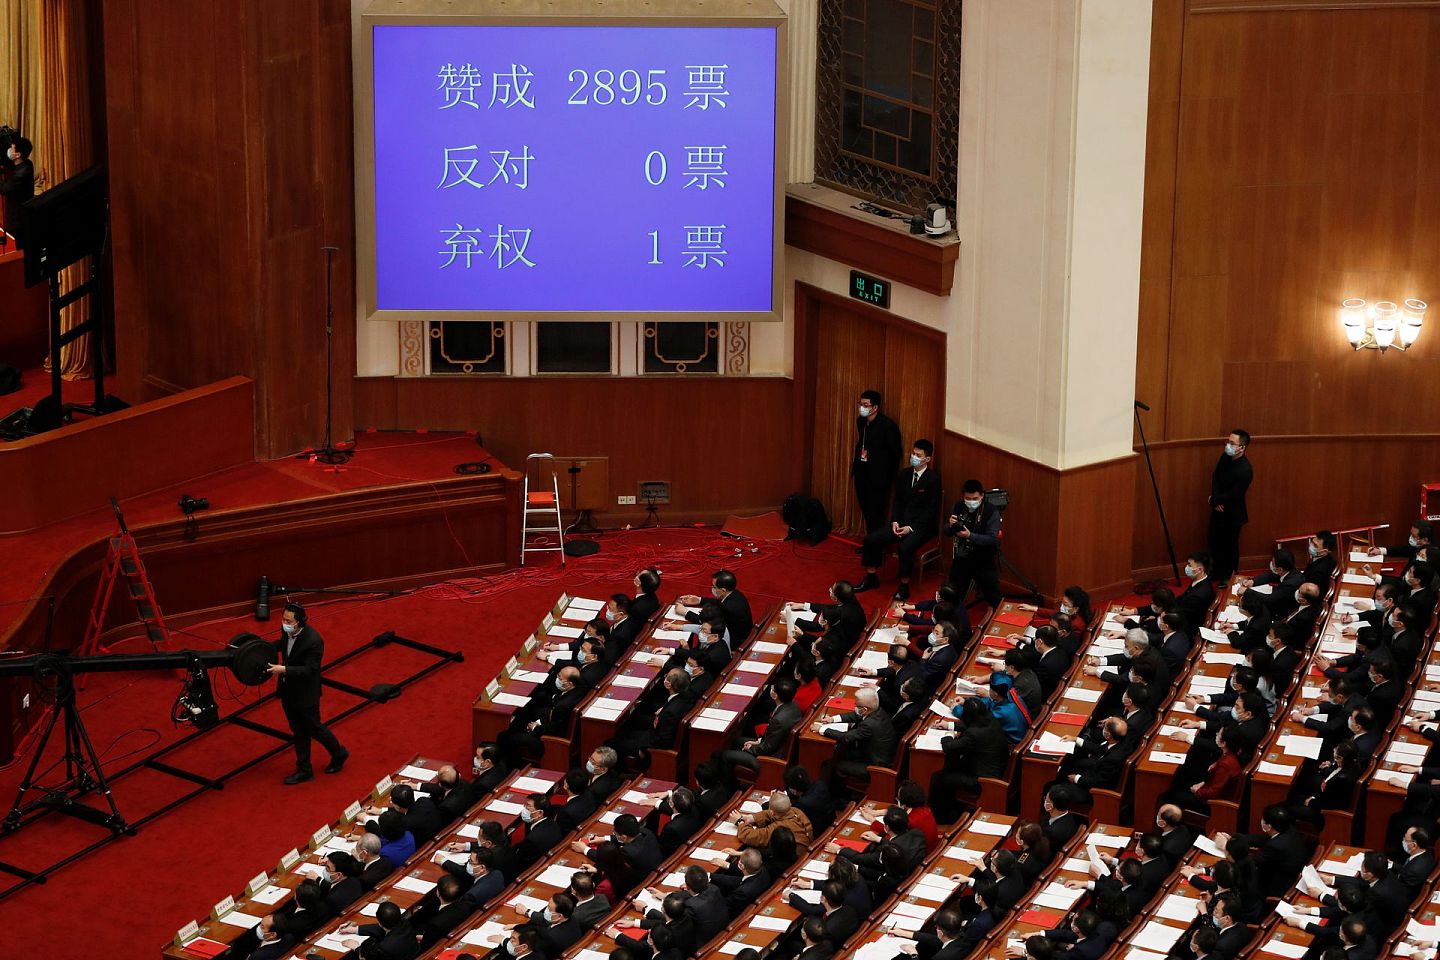 中国全国人民代表大会闭幕会议于2021年3月11日在北京人民大会堂举行，大会屏幕显示有关香港选举改革的投票结果。（Reuters）